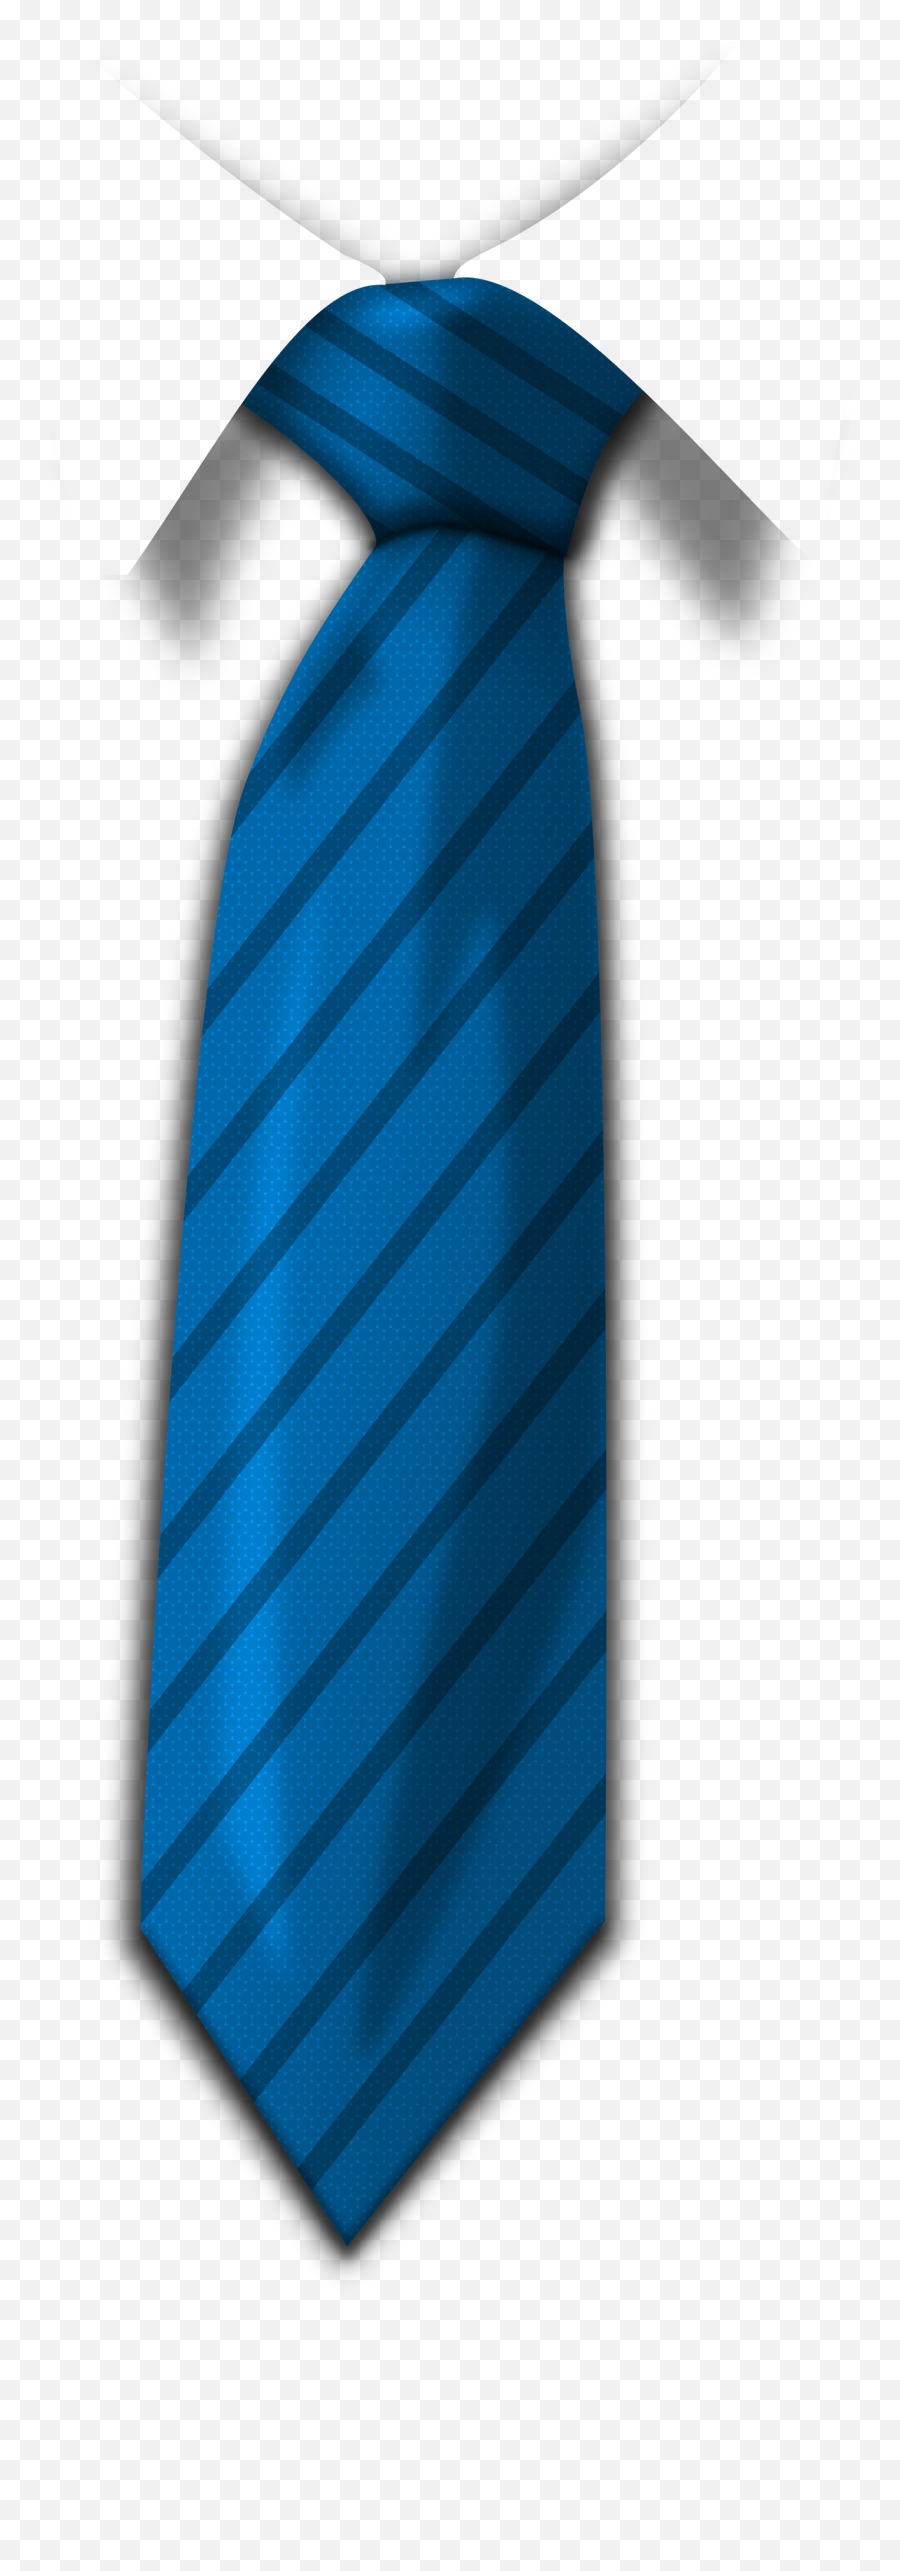 Hq Tie Png Transparent - Blue Tie Transparent Background,Tie Clipart Png